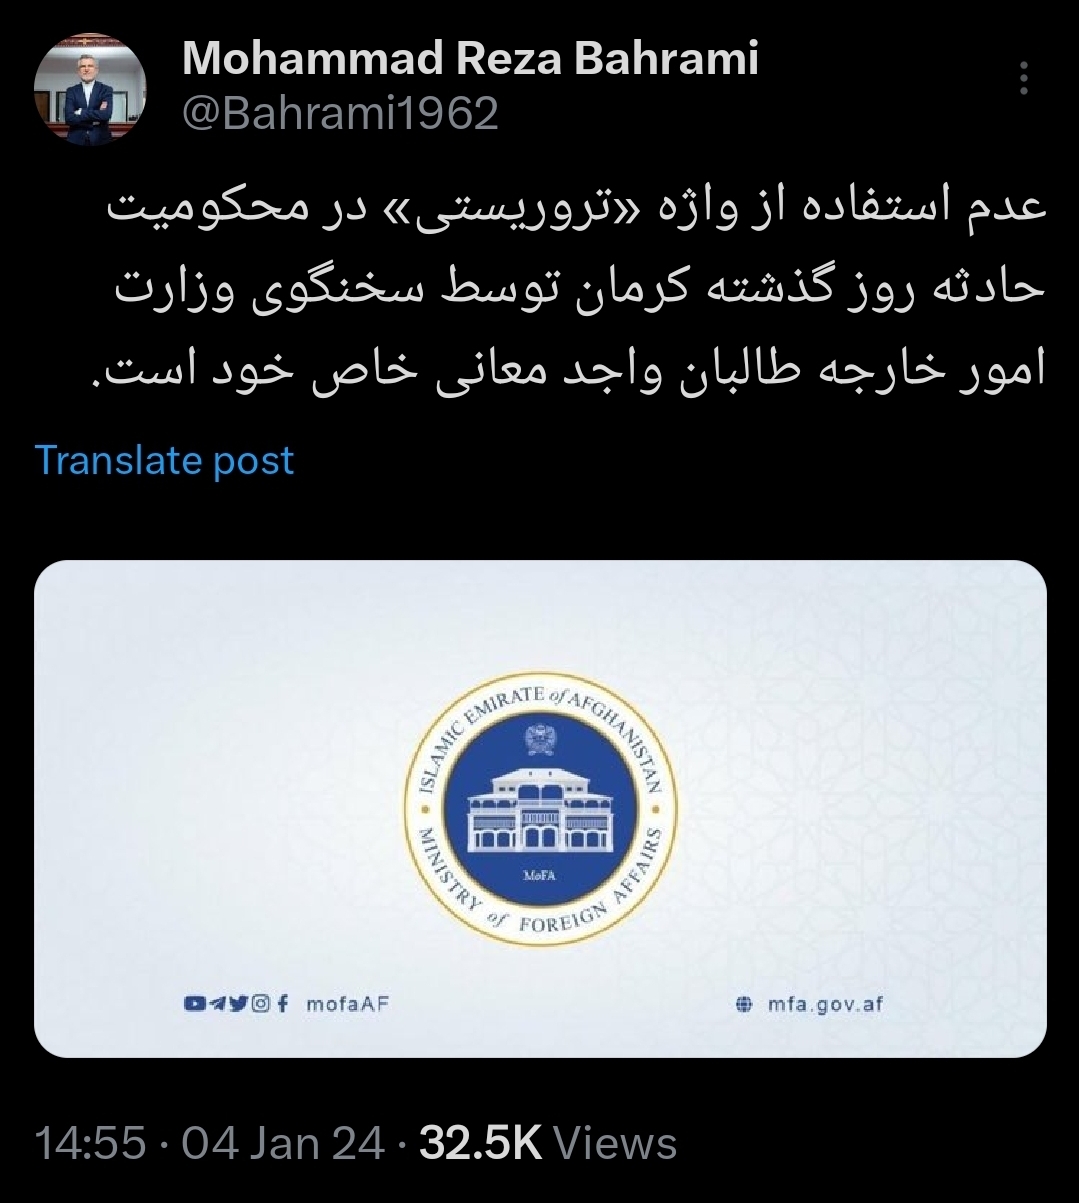 بهرامی: عدم استفاده طالبان از واژه «تروریستی» برای حادثه کرمان واجد معانی خاص است